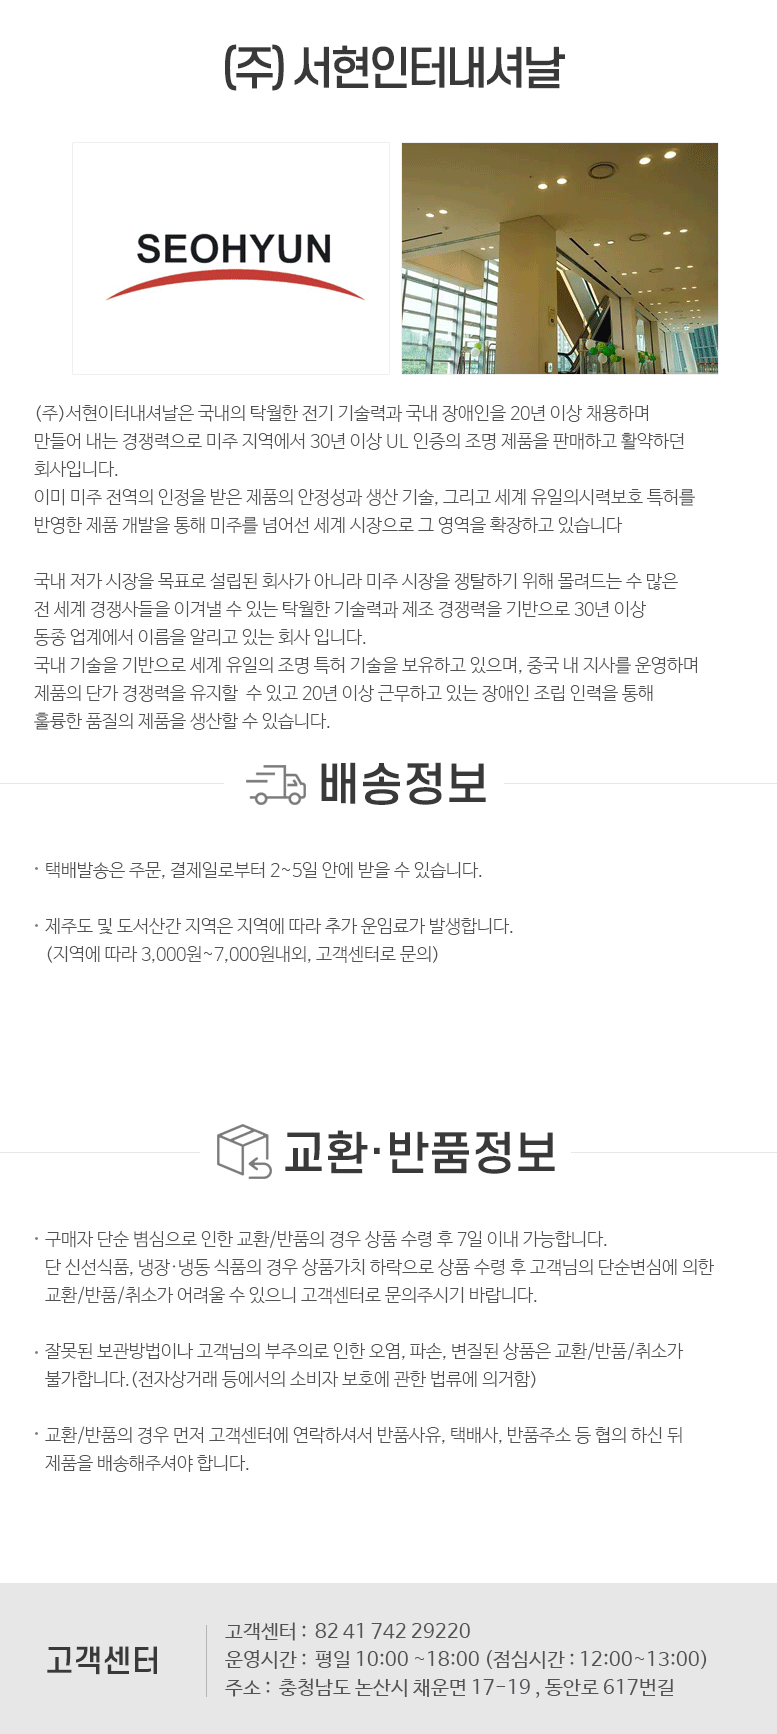 서현_하단공통정보.png